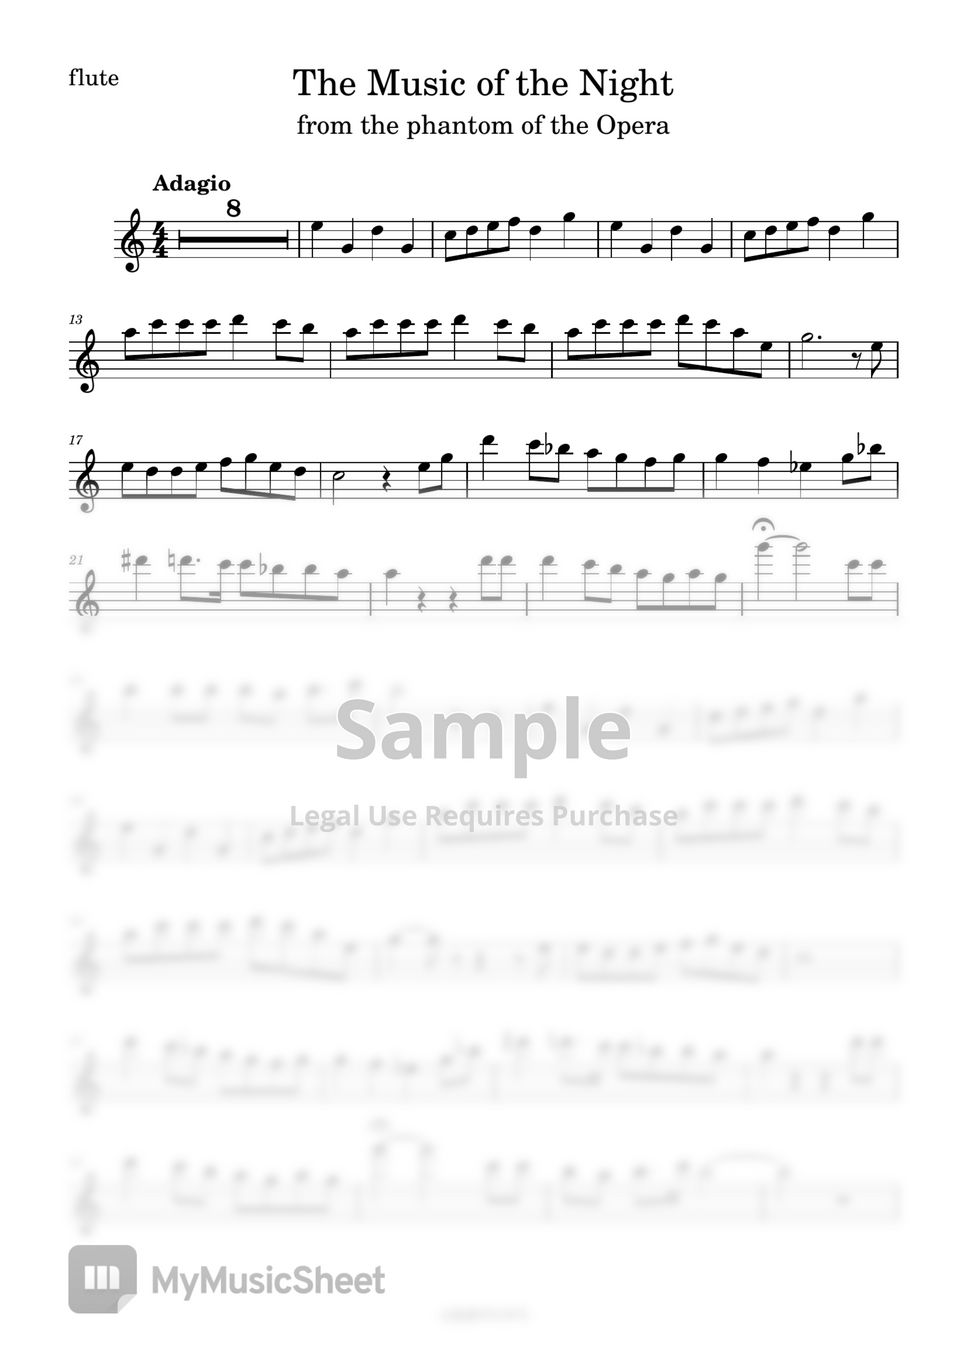 앤드류 로이드 웨버 - The music of the night (오페라의 유령 OST/반주 MR/피아노 악보) by 심플플루트뮤직